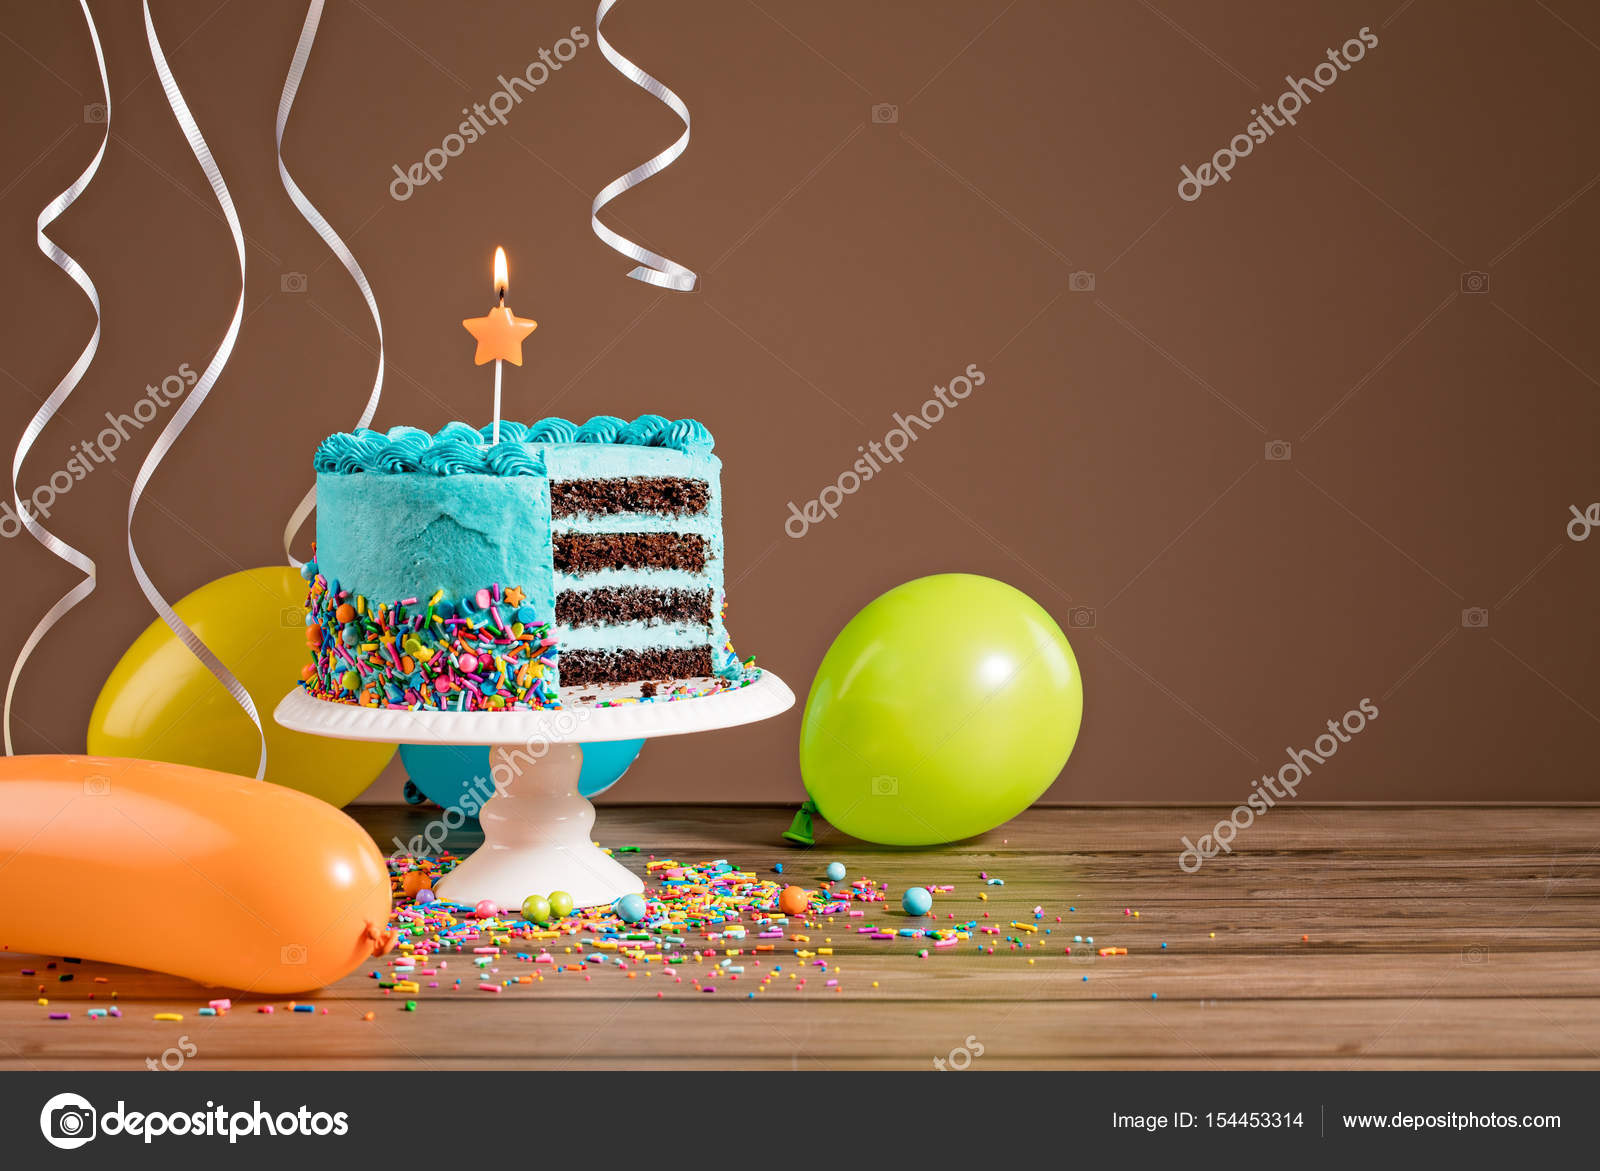 День рождения полностью. С днем рождения. Тортик с днем рождения. Открытка с днём рождения тортик. Поздравления с днём рождения торт.